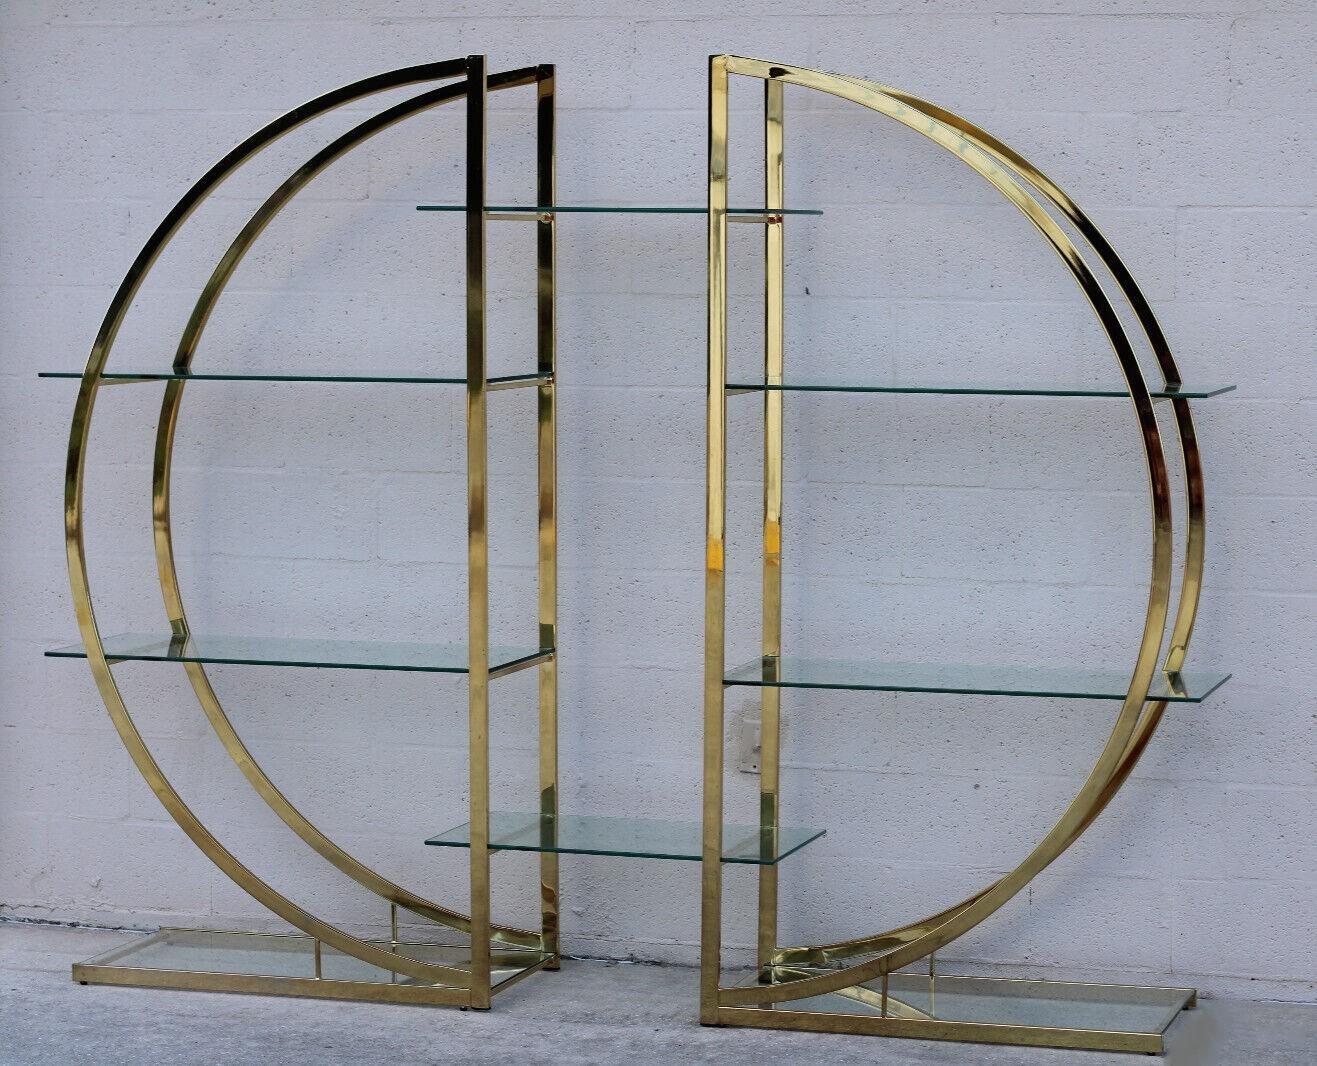 Erstaunliche runde Etagere in der Art von Milo Baughman bietet eine schöne und originelle Display-Konfiguration. Das einzigartige zweiteilige Design ermöglicht es, die Gesamtbreite leicht zu verändern, indem die Teile näher oder weiter voneinander